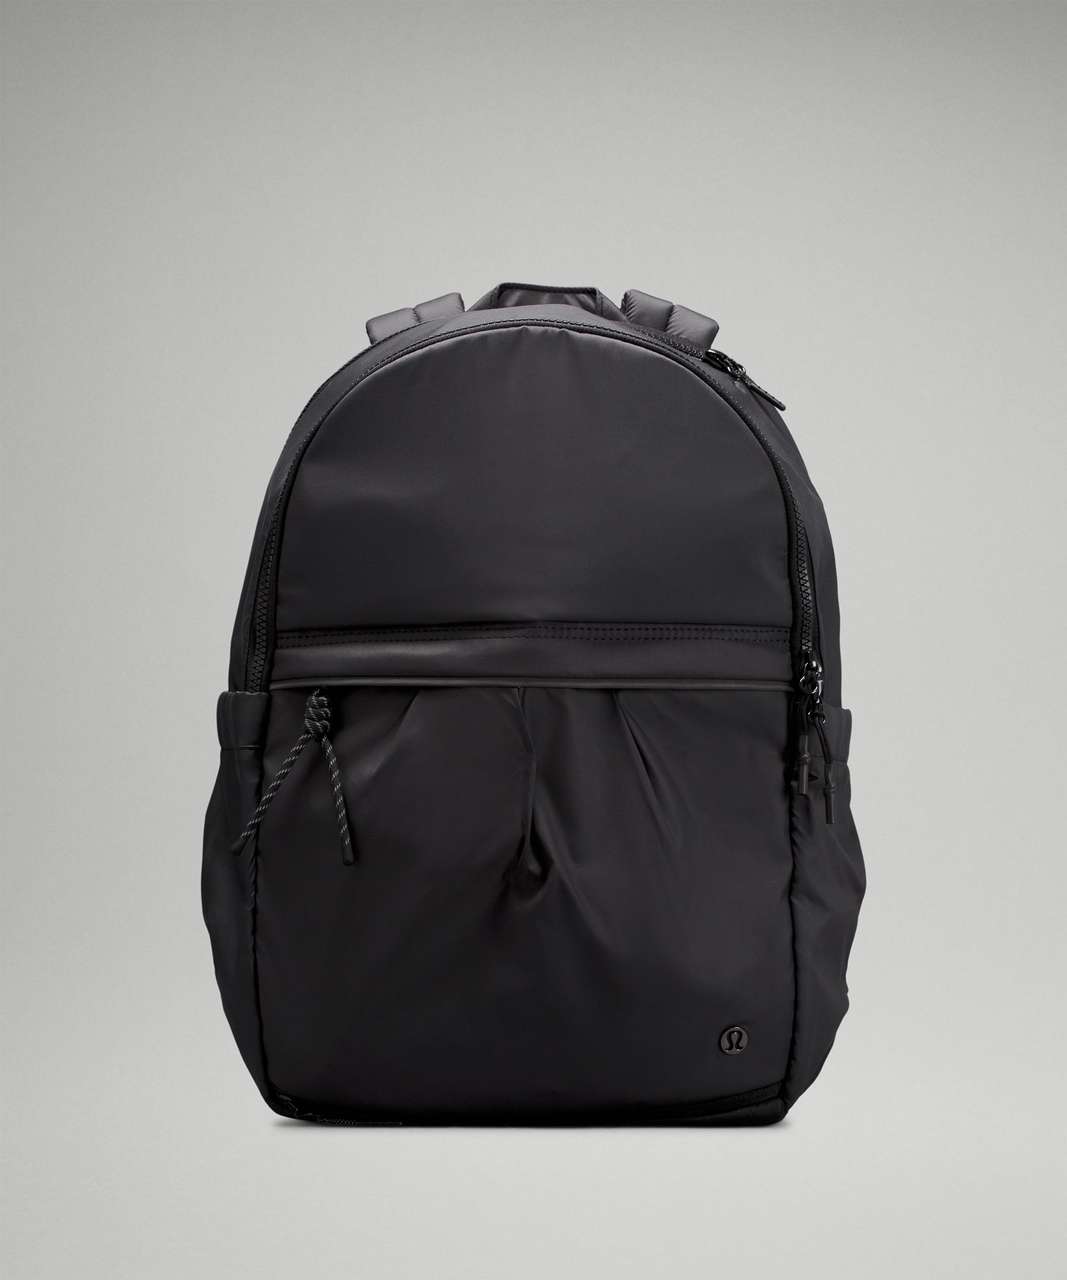 Lululemon Pack It Up Backpack 21L - Black